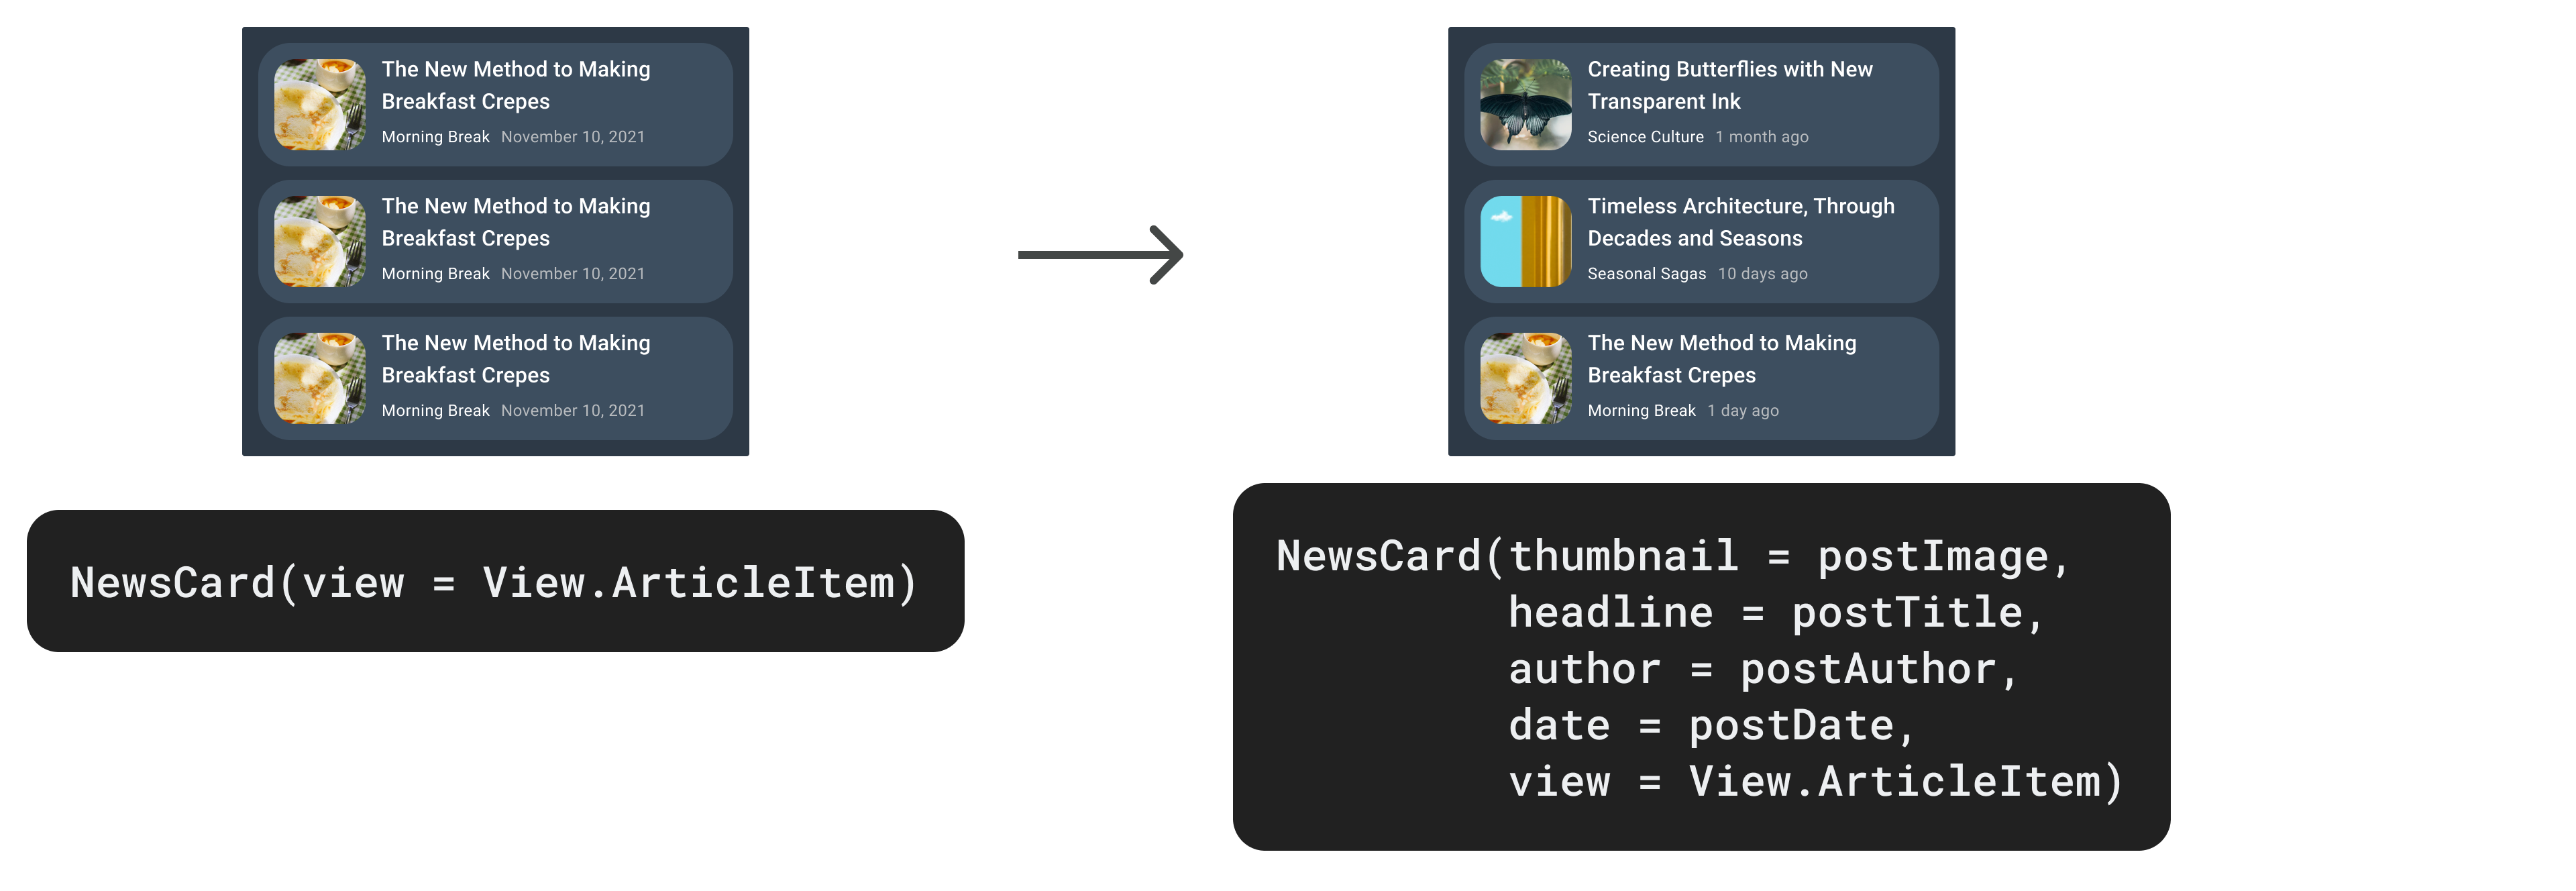 Memperbarui NewsCard dengan menghadirkan lebih banyak parameter